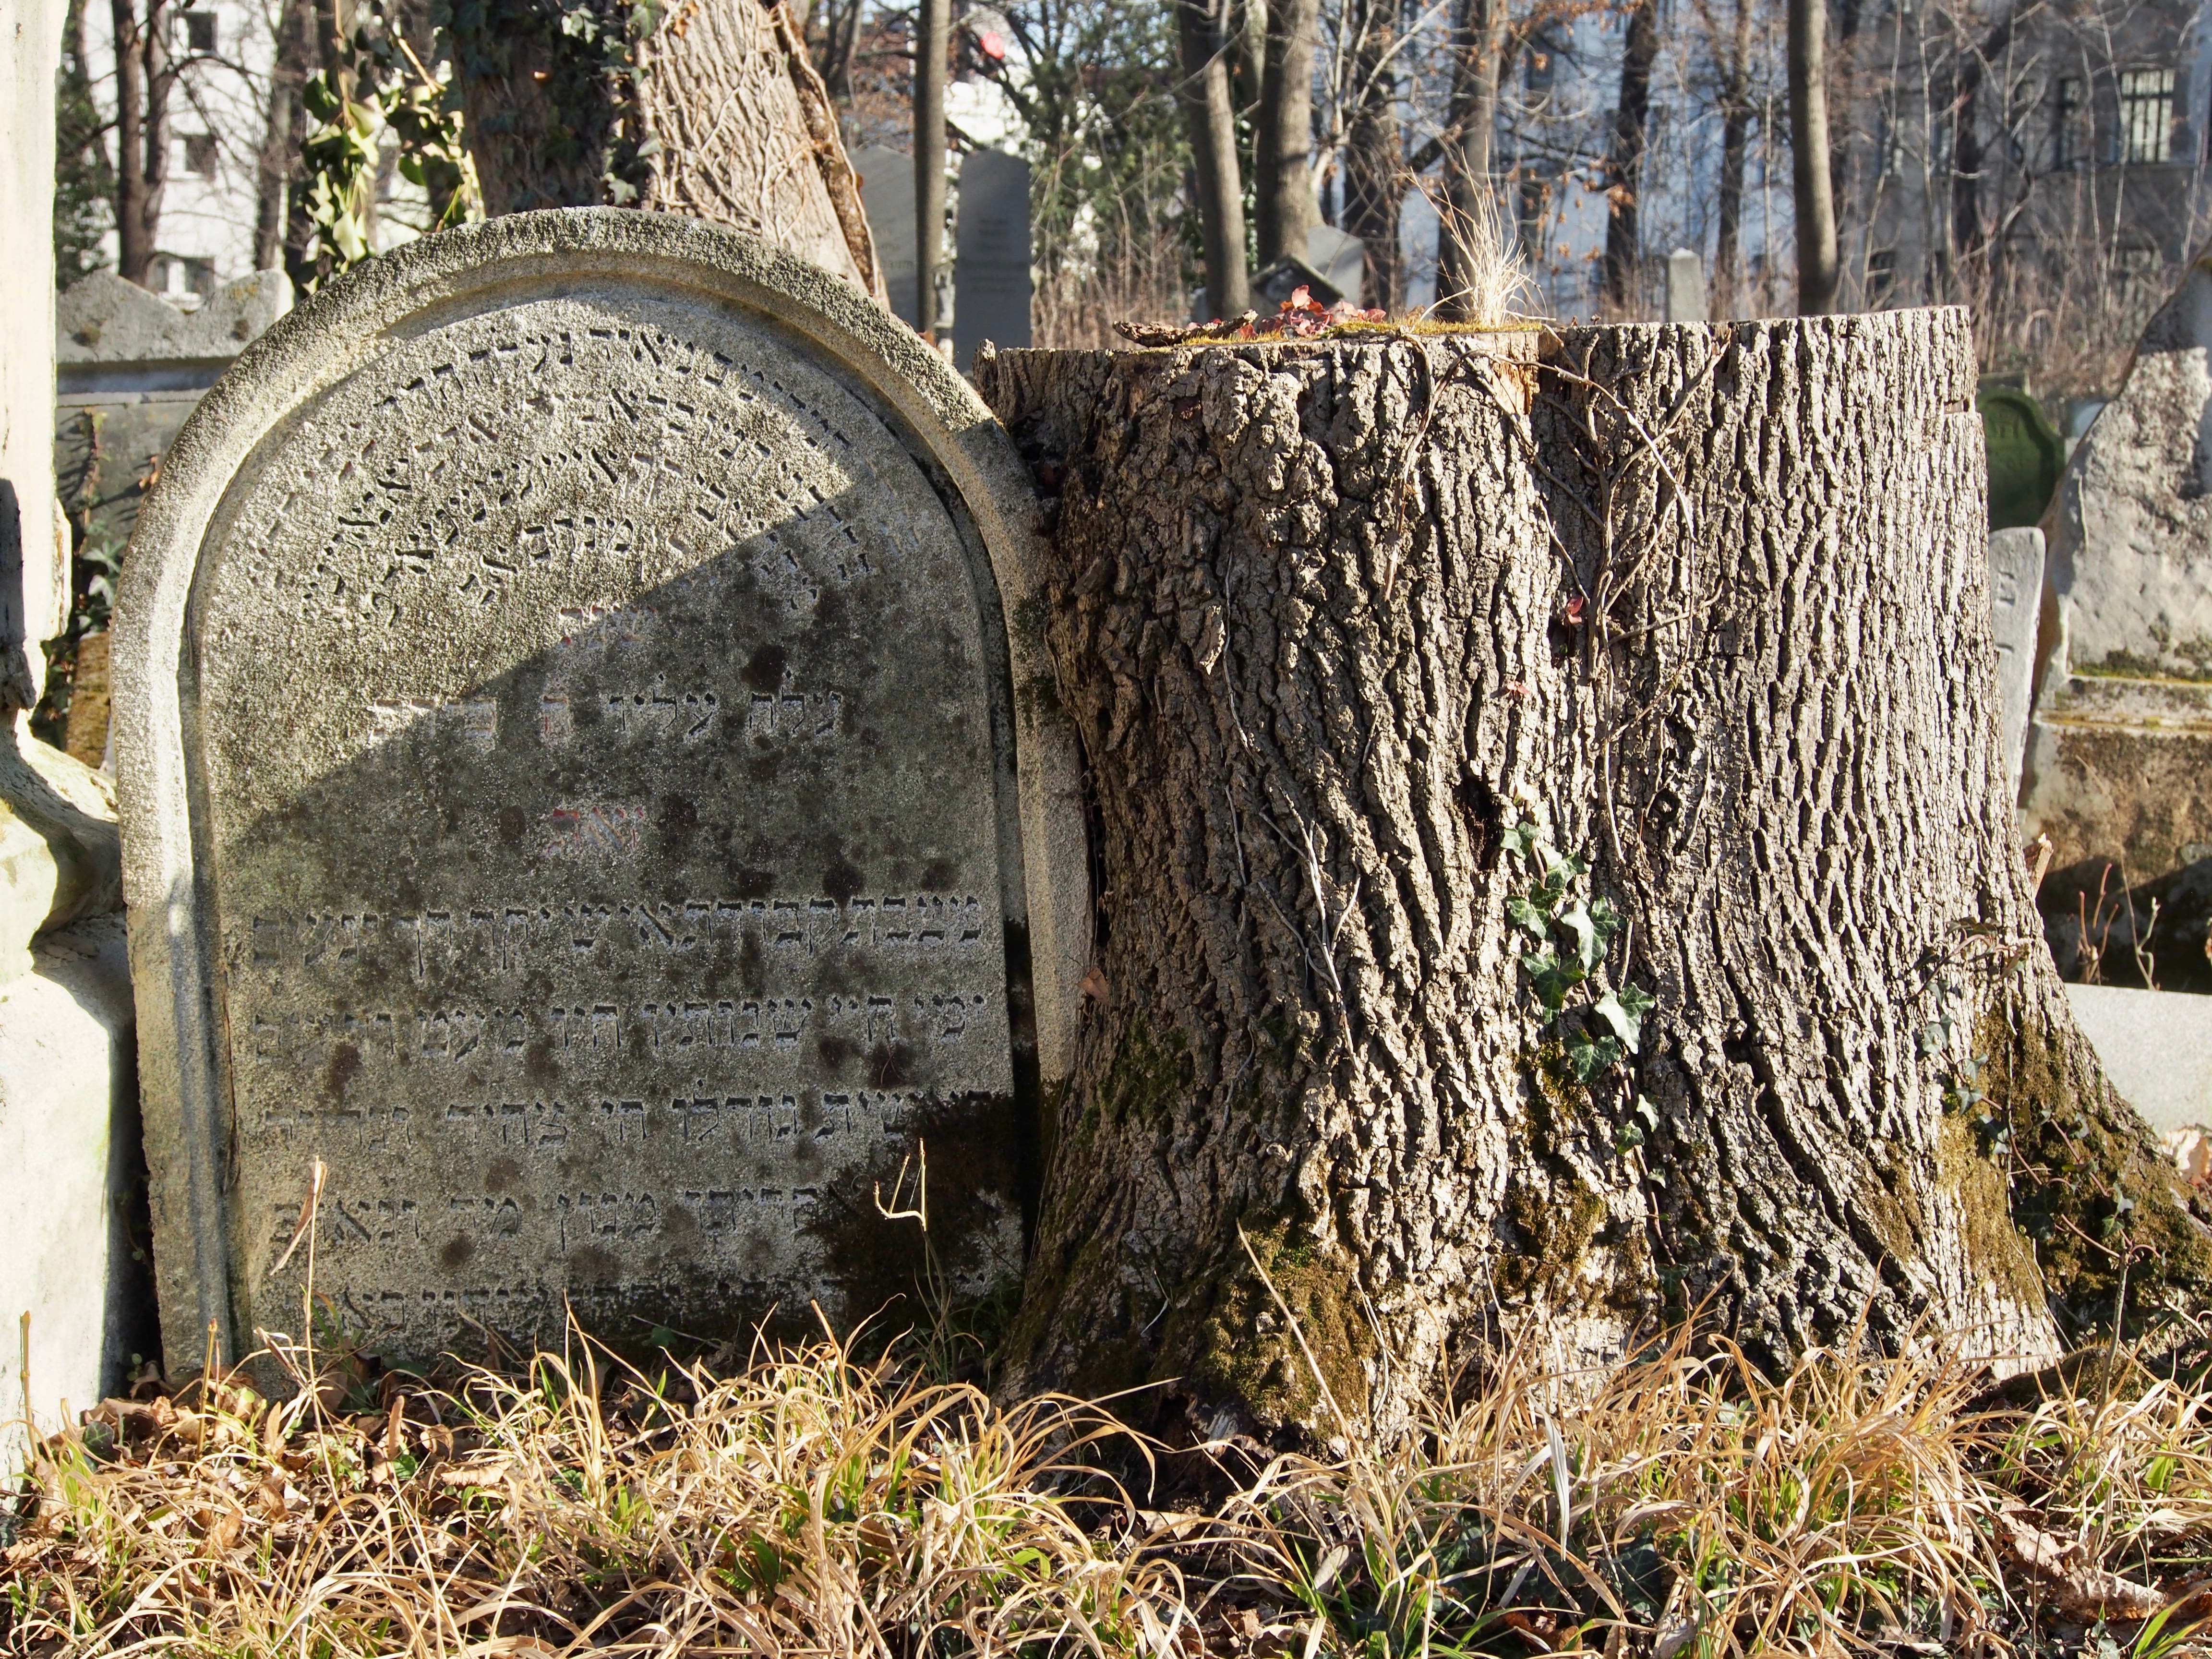 zu sehen ist ein Grabstein mit hebräischer Inschrift an einem Baumstamm.